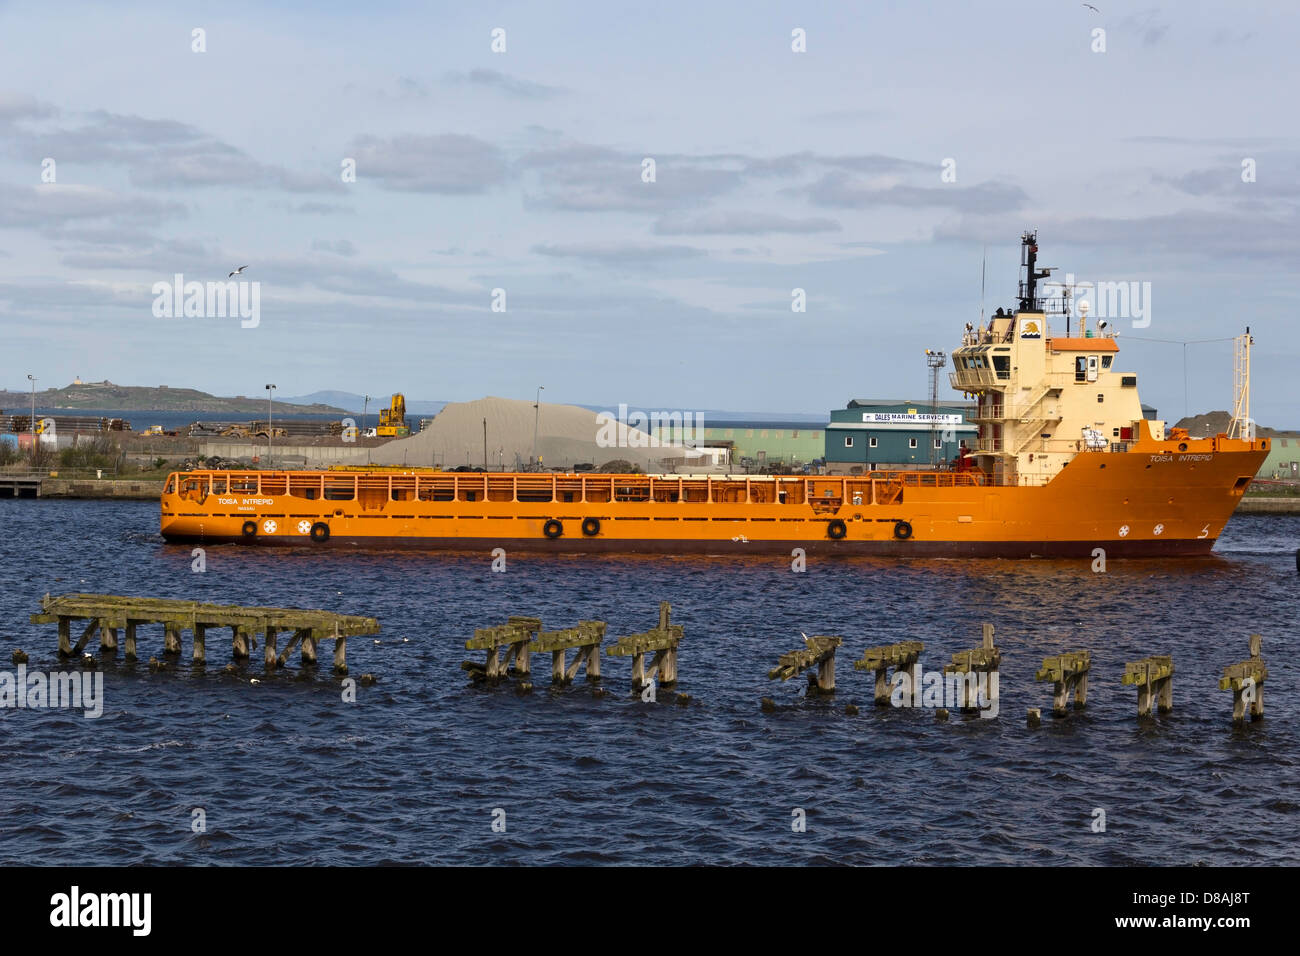 Una grande nave arancione al porto di Leith vicino a Edimburgo in Scozia con un tumulo a destra dietro la nave Foto Stock